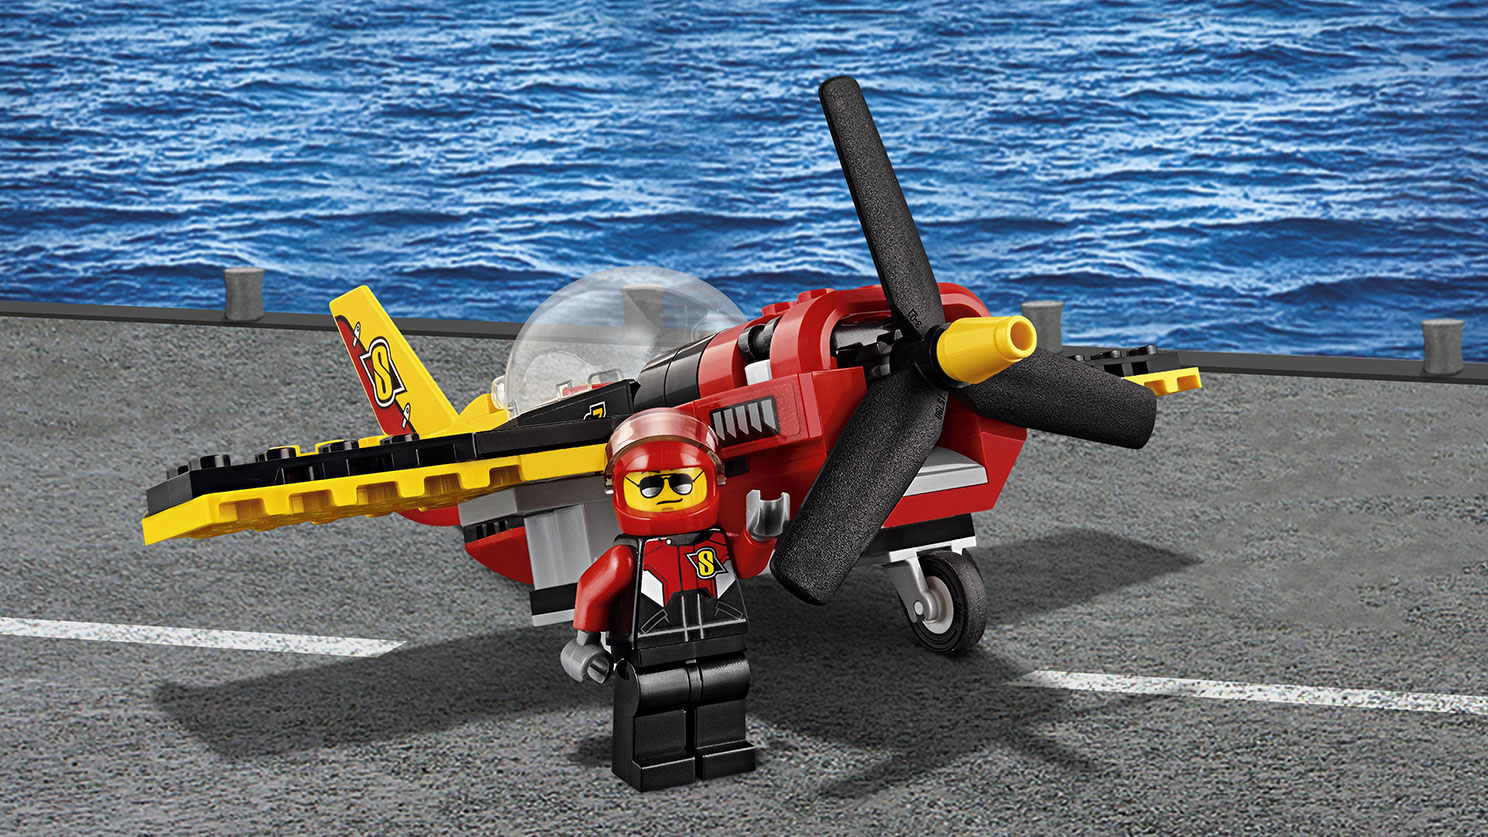 LEGO City. Гоночный самолет   